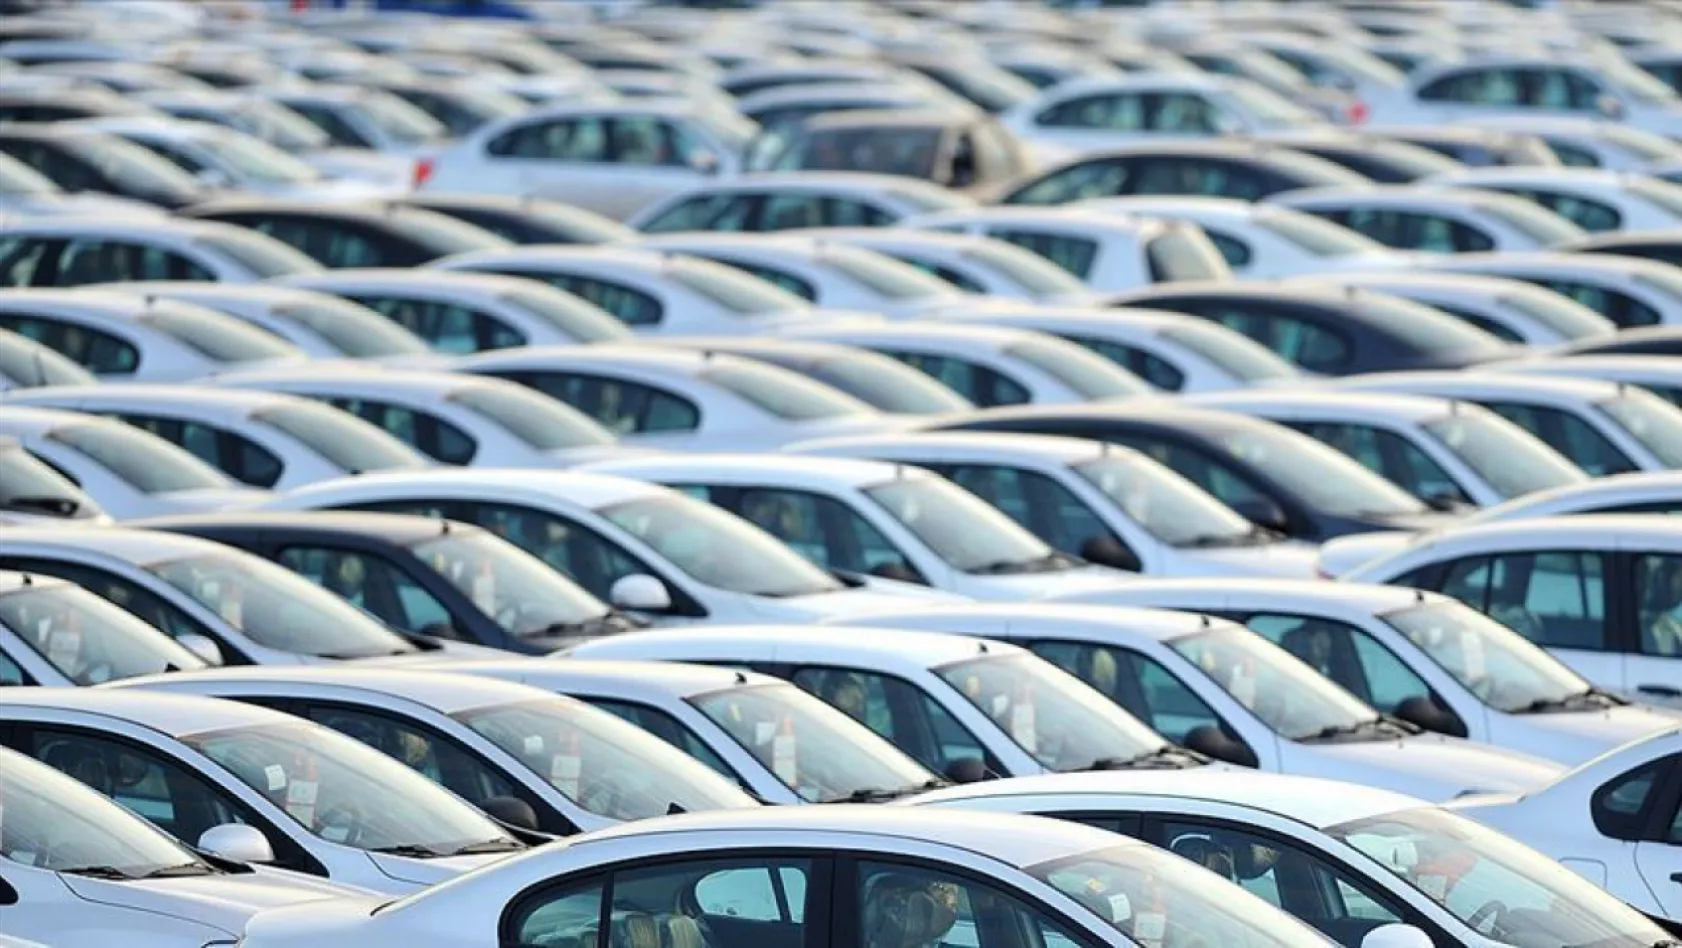 Otomobil satışları Şubat ayında arttı